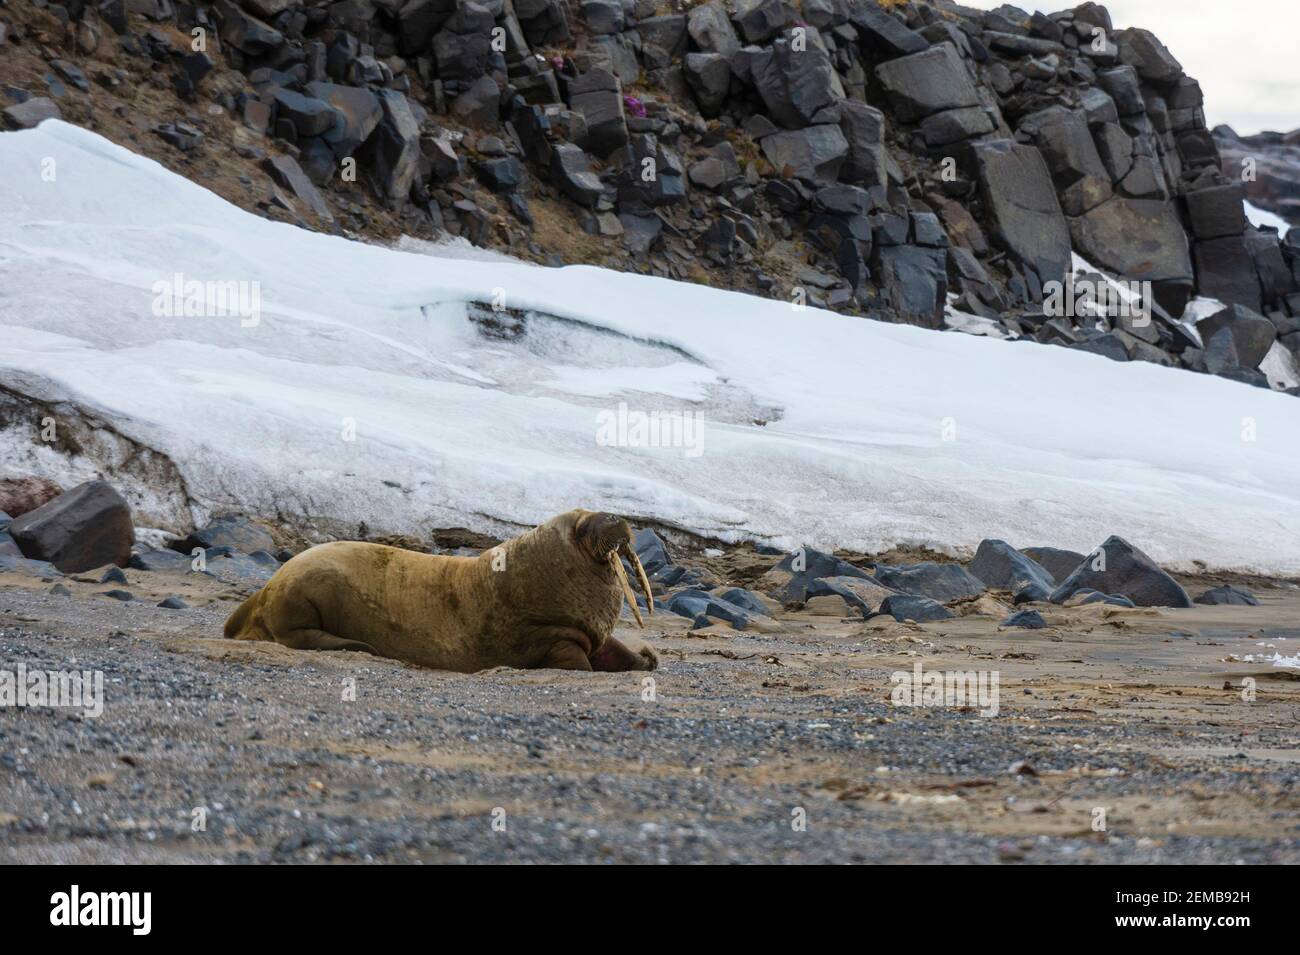 Atlantic walrus (Odobenus rosmarus), Edgeoya island, Svalbard islands. Stock Photo